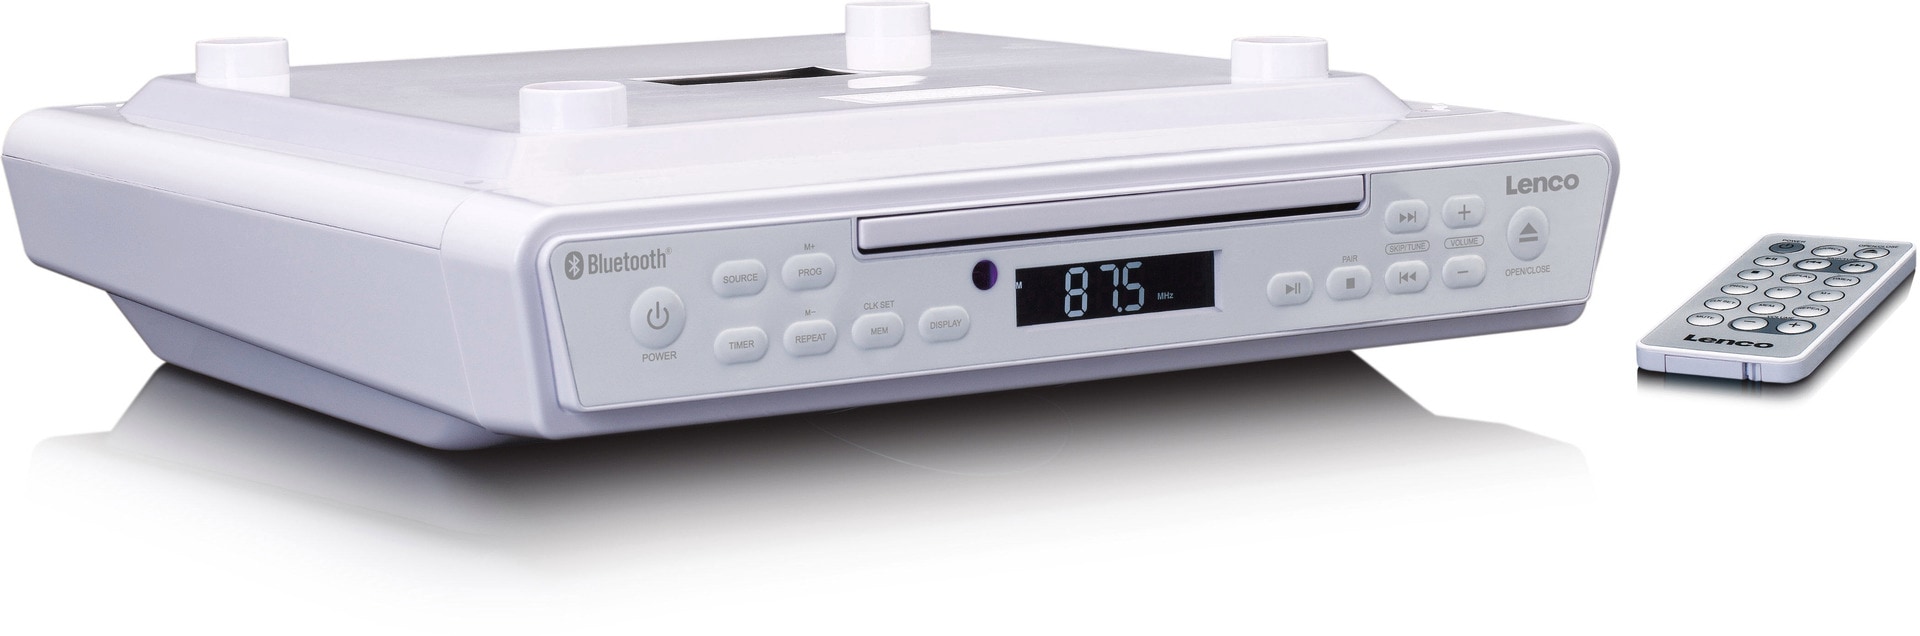 Lenco KCR-150WH Küchenradio CD-Player, Weiß Cyberport mit 